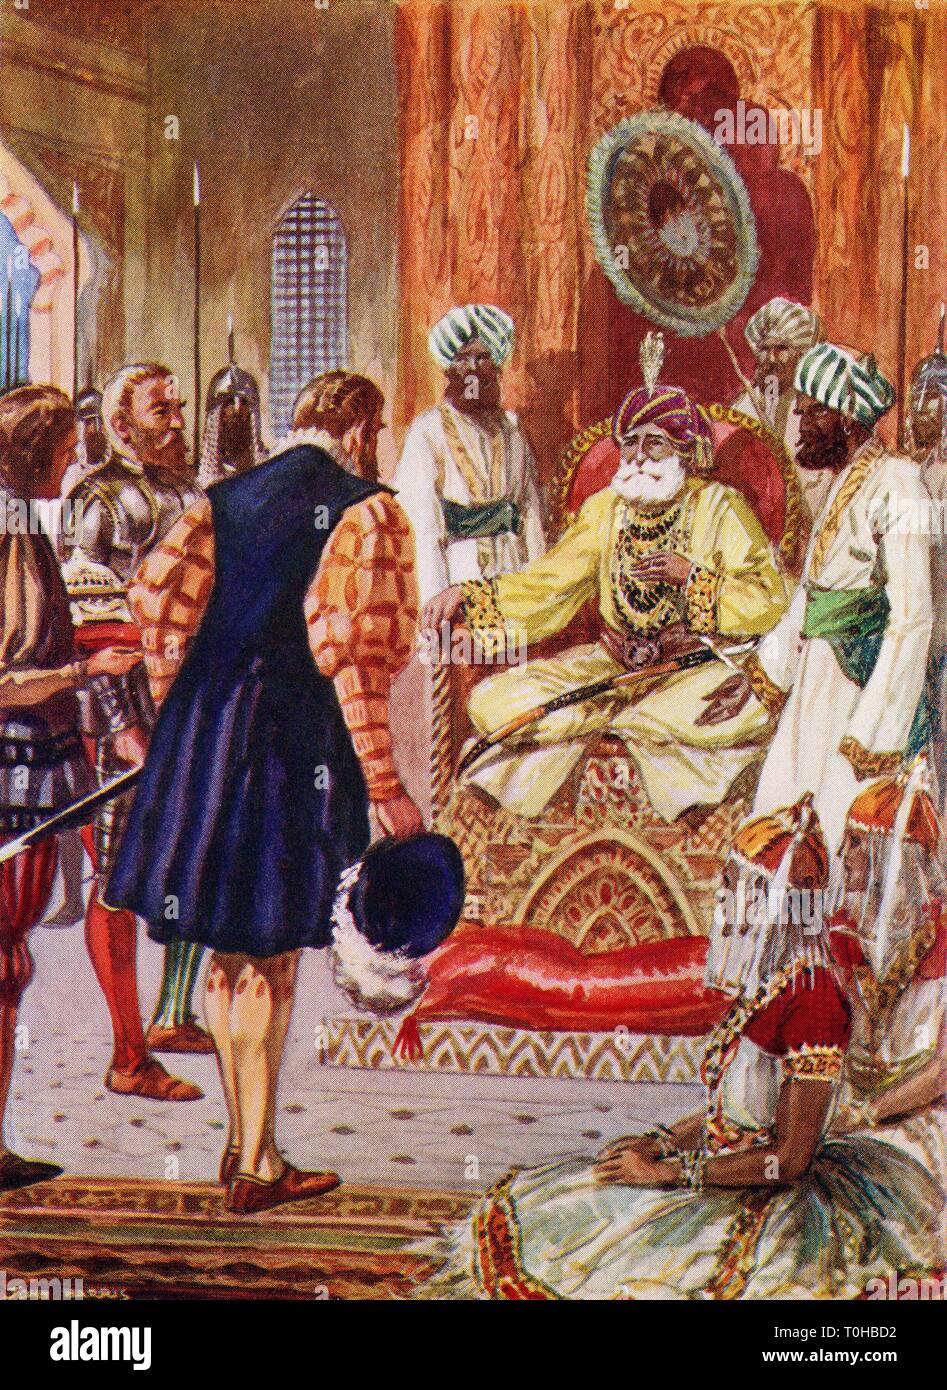 Vasco Da Gama visiter le Rajah de New Delhi, Inde, 1498 Banque D'Images